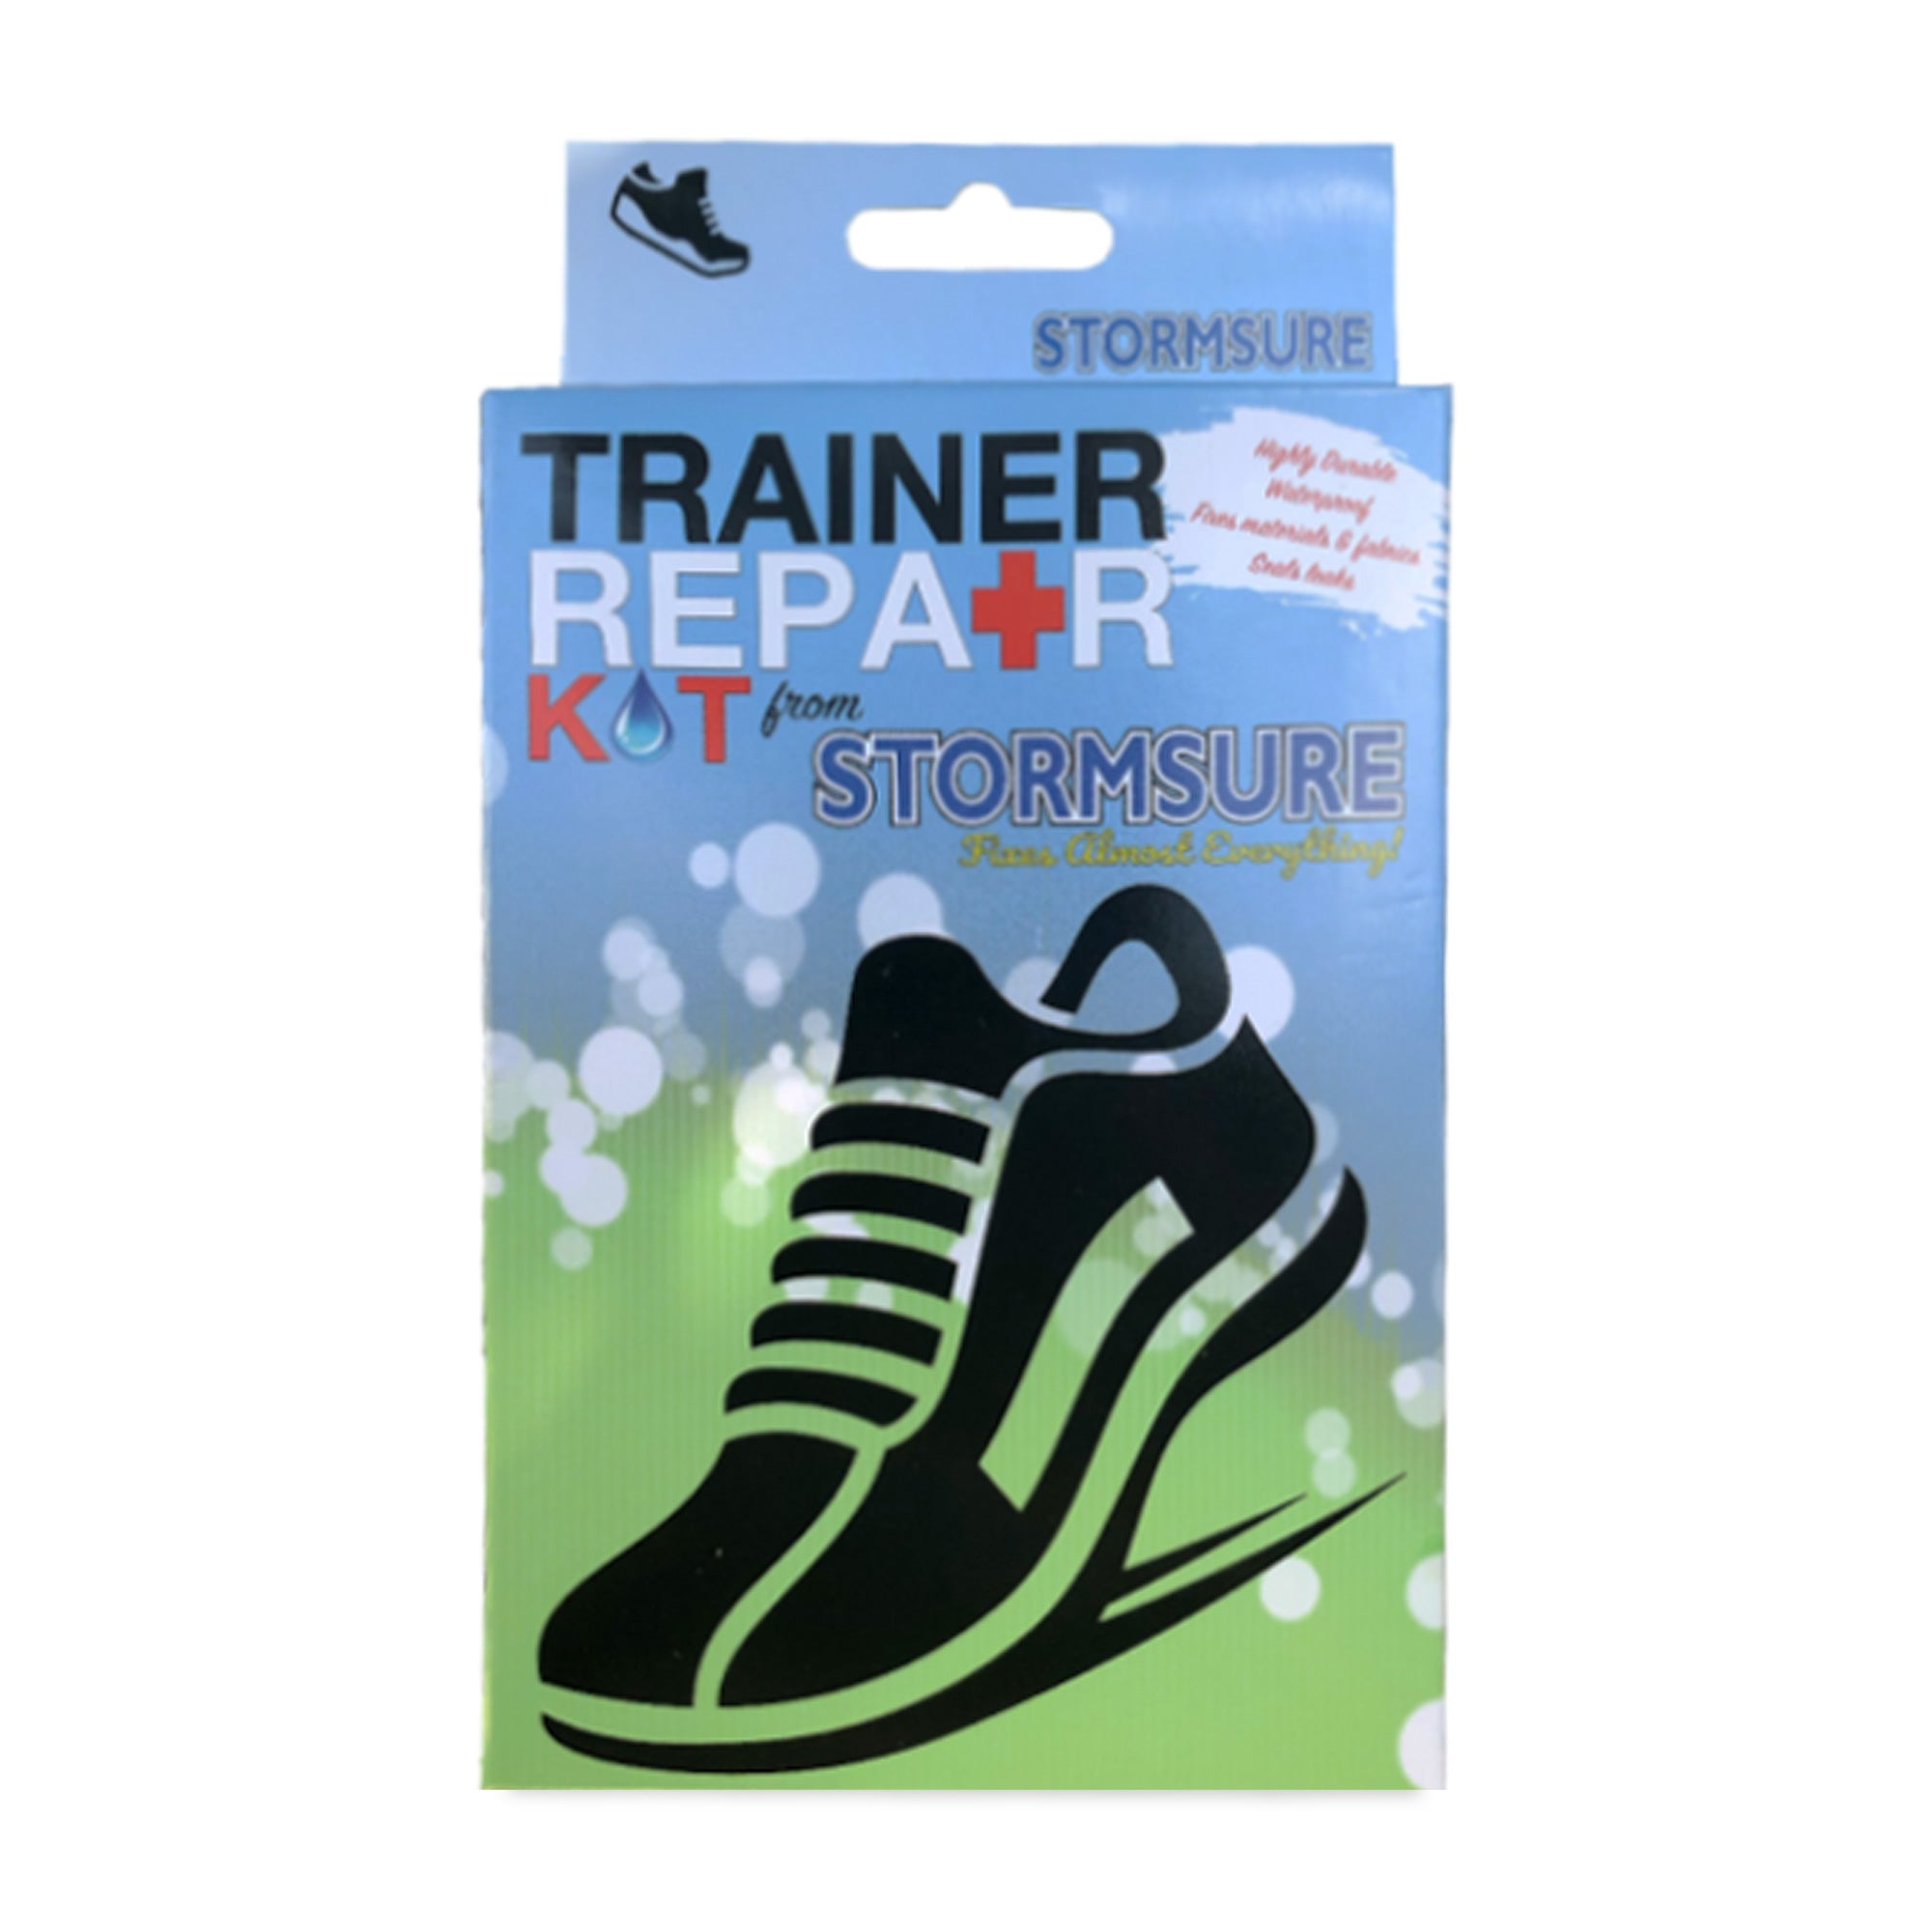 Stormsure Trainer Repair Kit